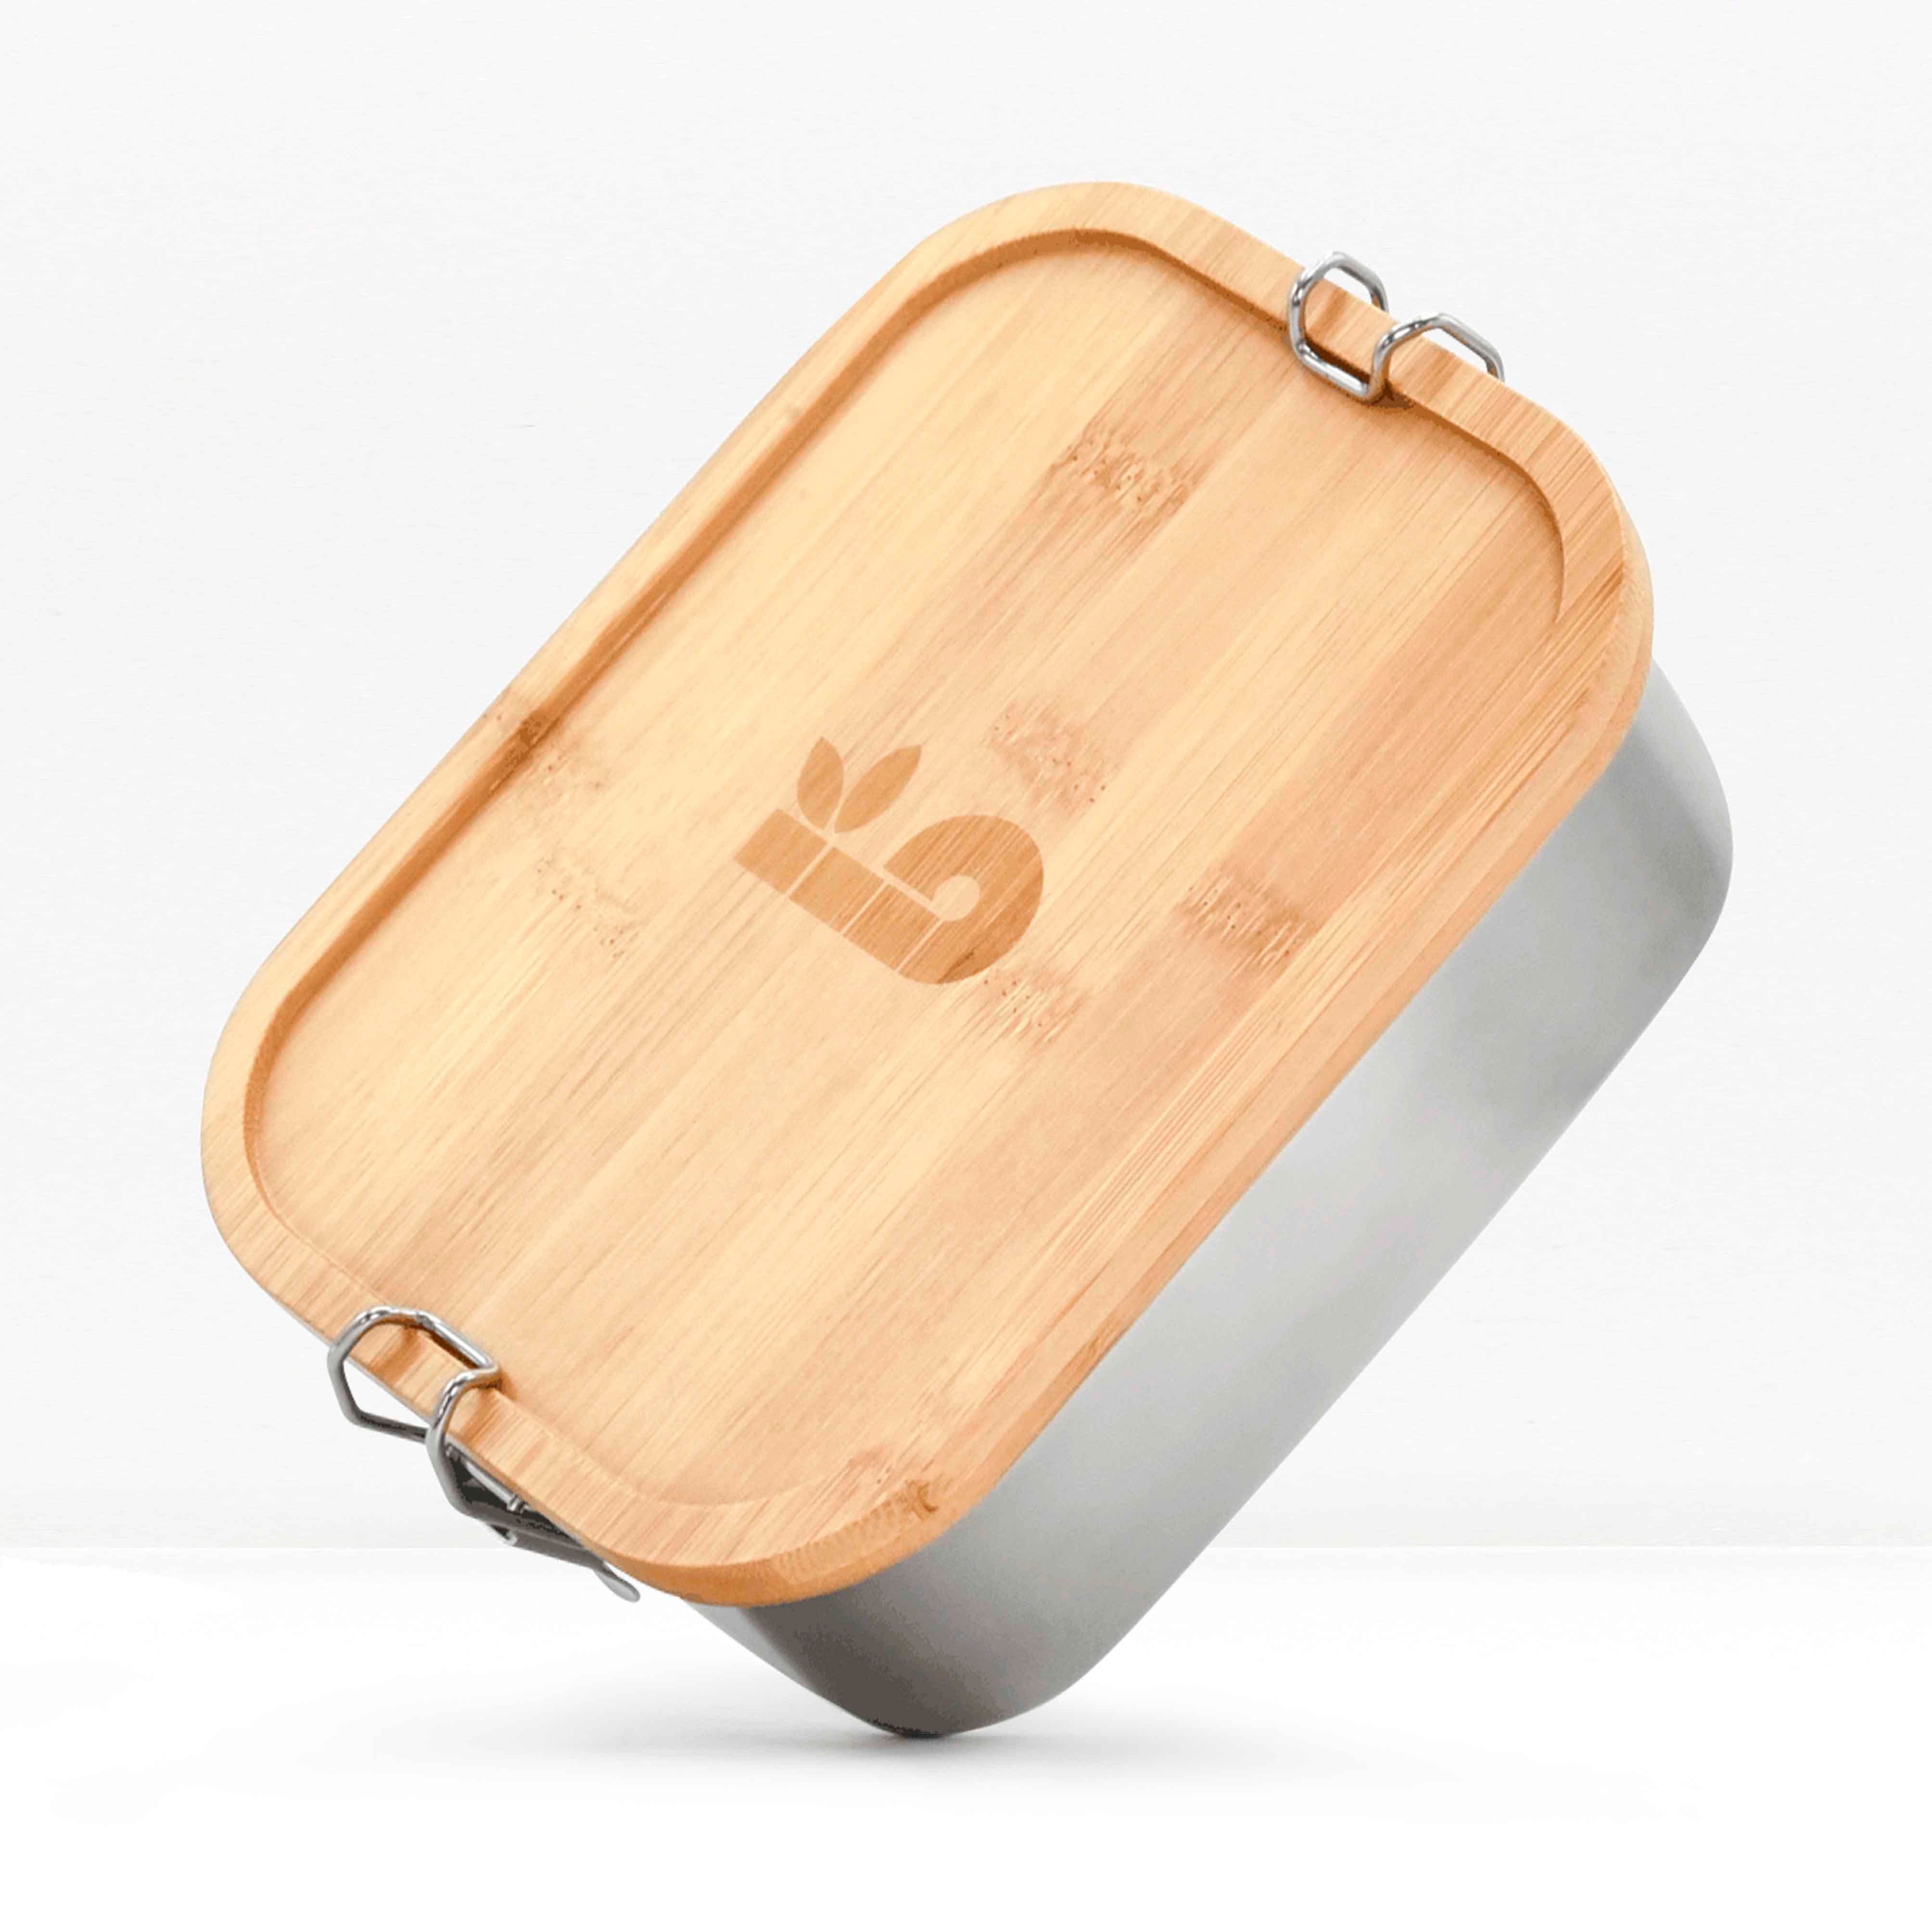 Lunch box en métal et bambou avec couverts